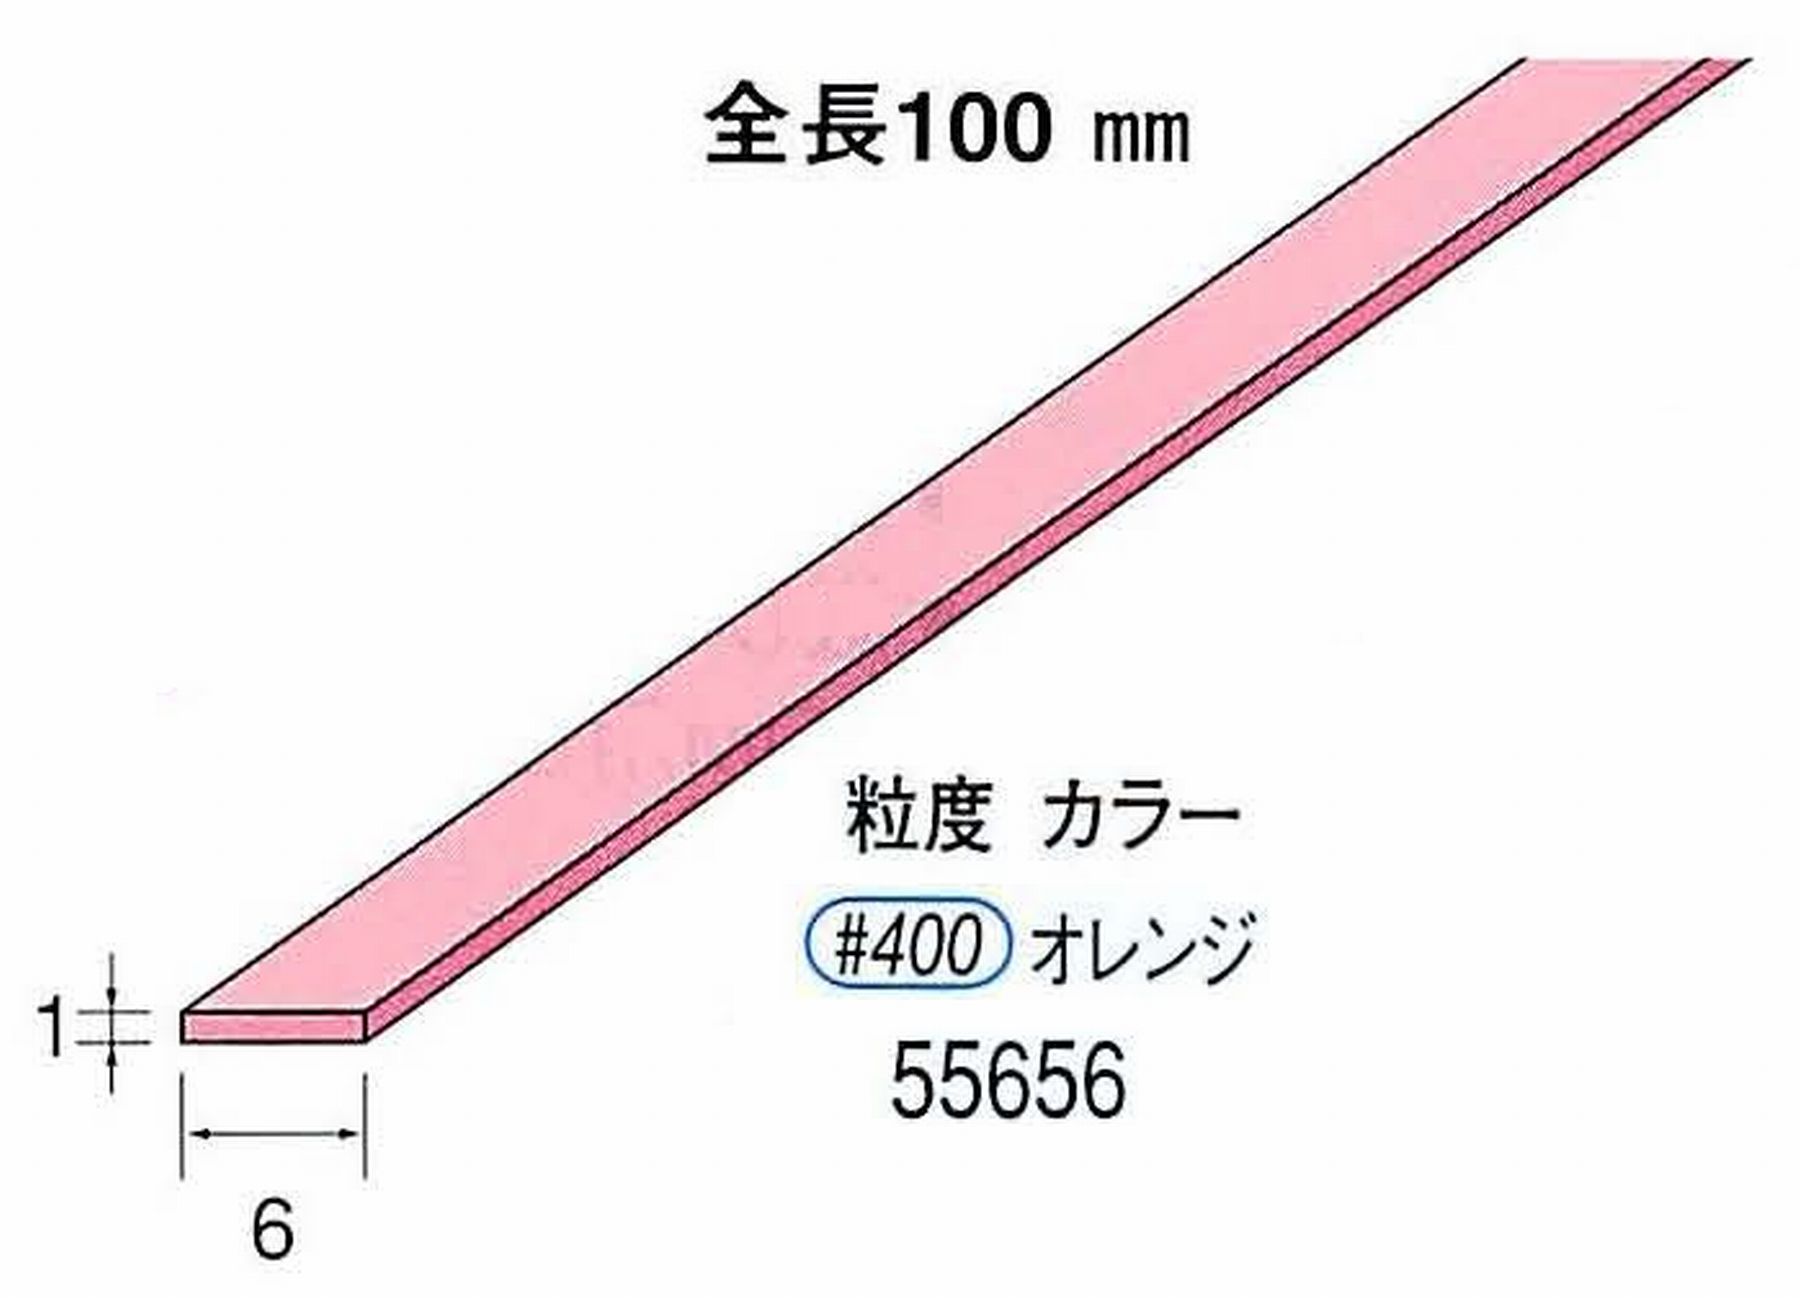 ナカニシ/NAKANISHI セラファイバー砥石 全長100mm オレンジ 55656